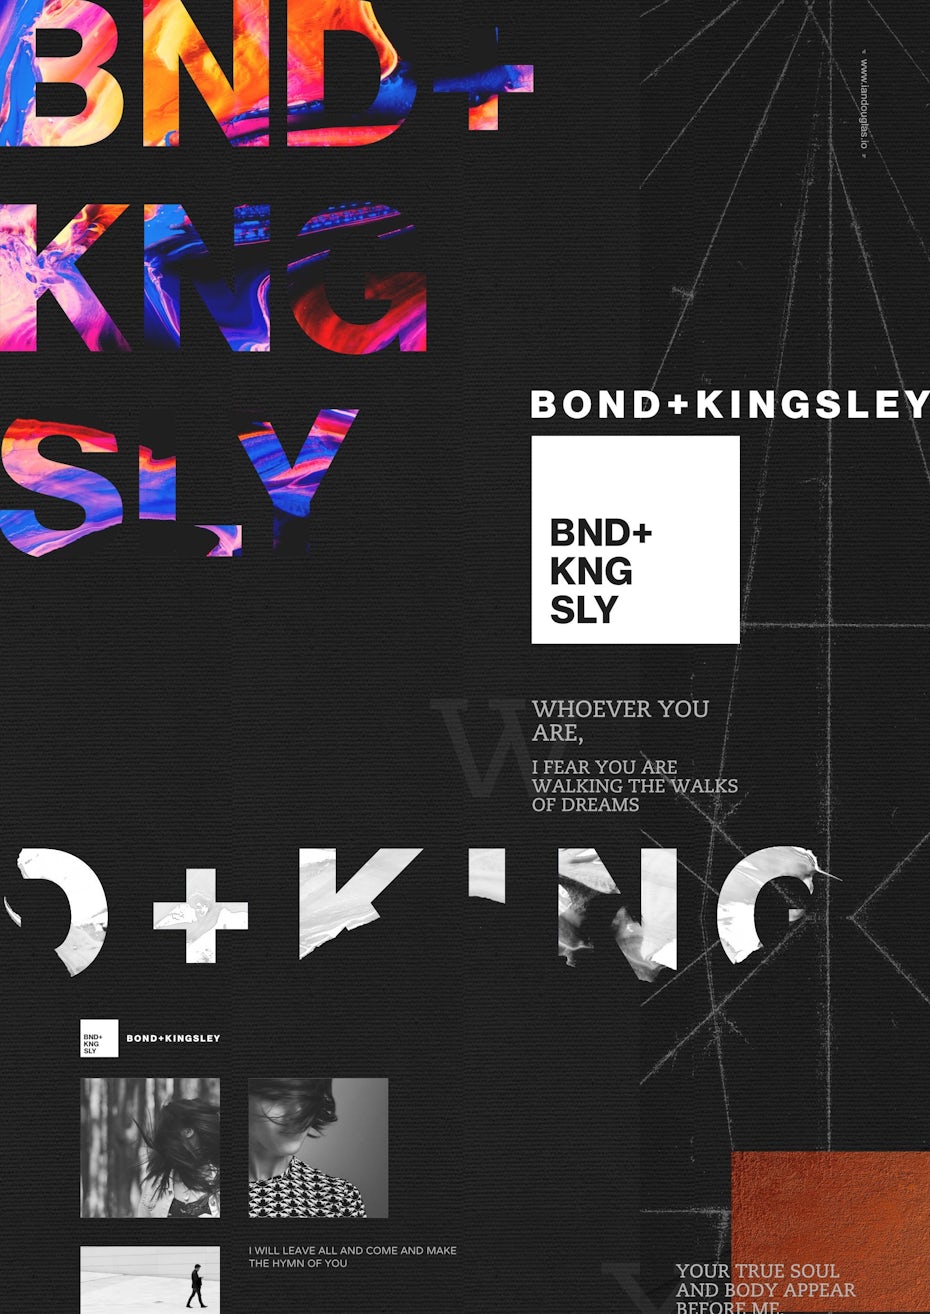 Bond + Kingsley branding